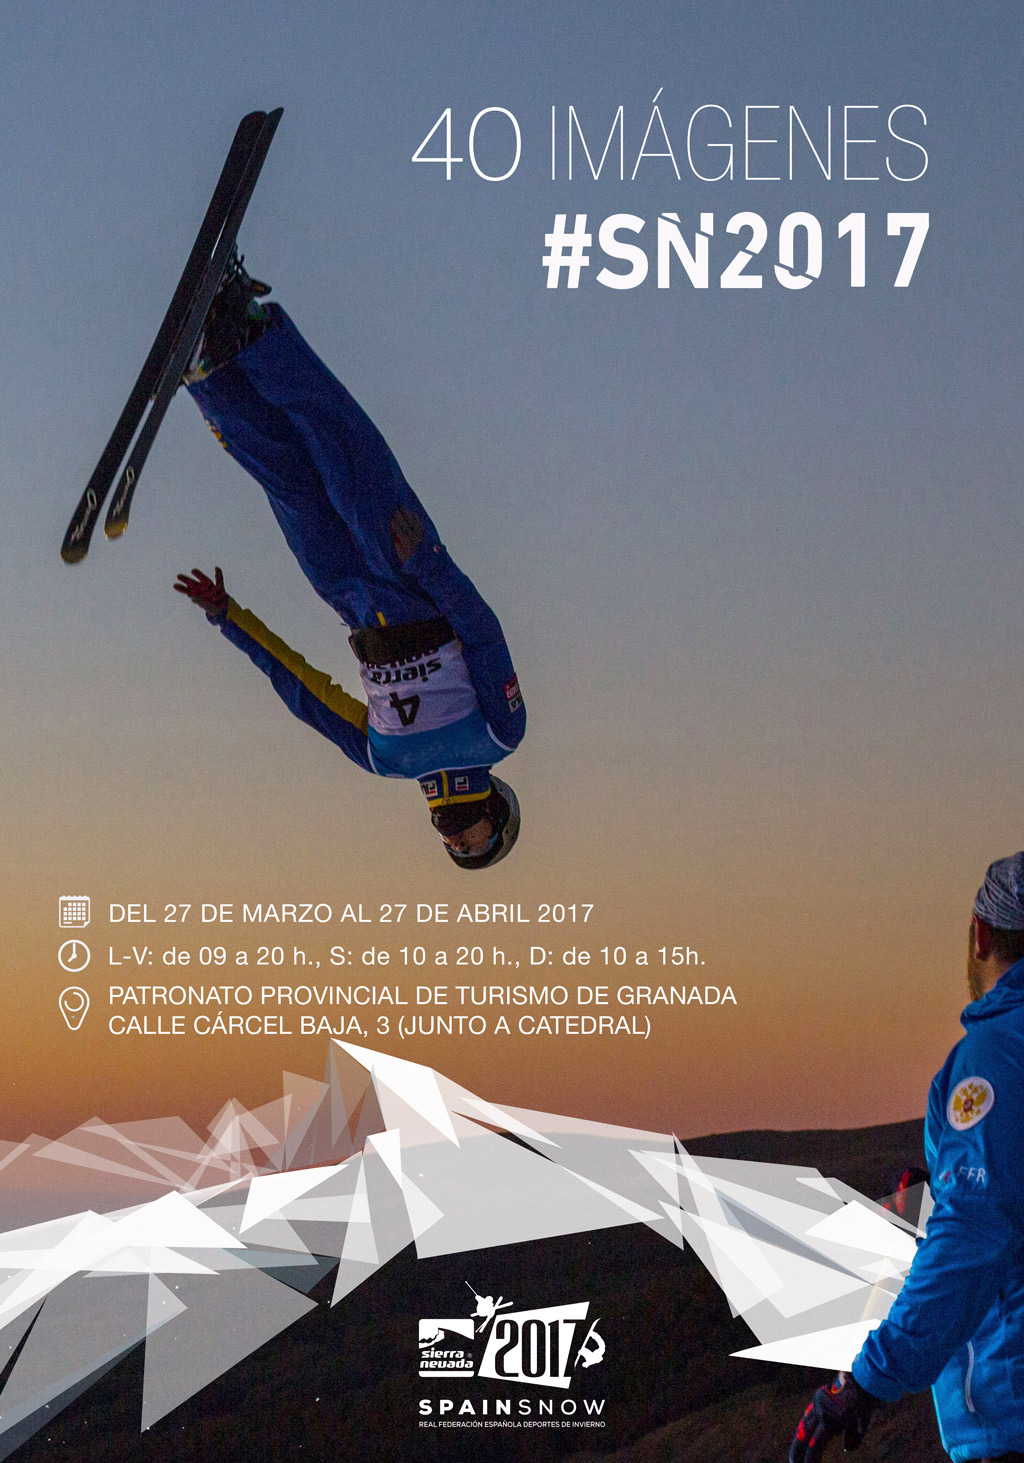 Sierra Nevada 2017 ha inaugurado una muestra fotográfica y un documental sobre los Campeonatos del Mundo